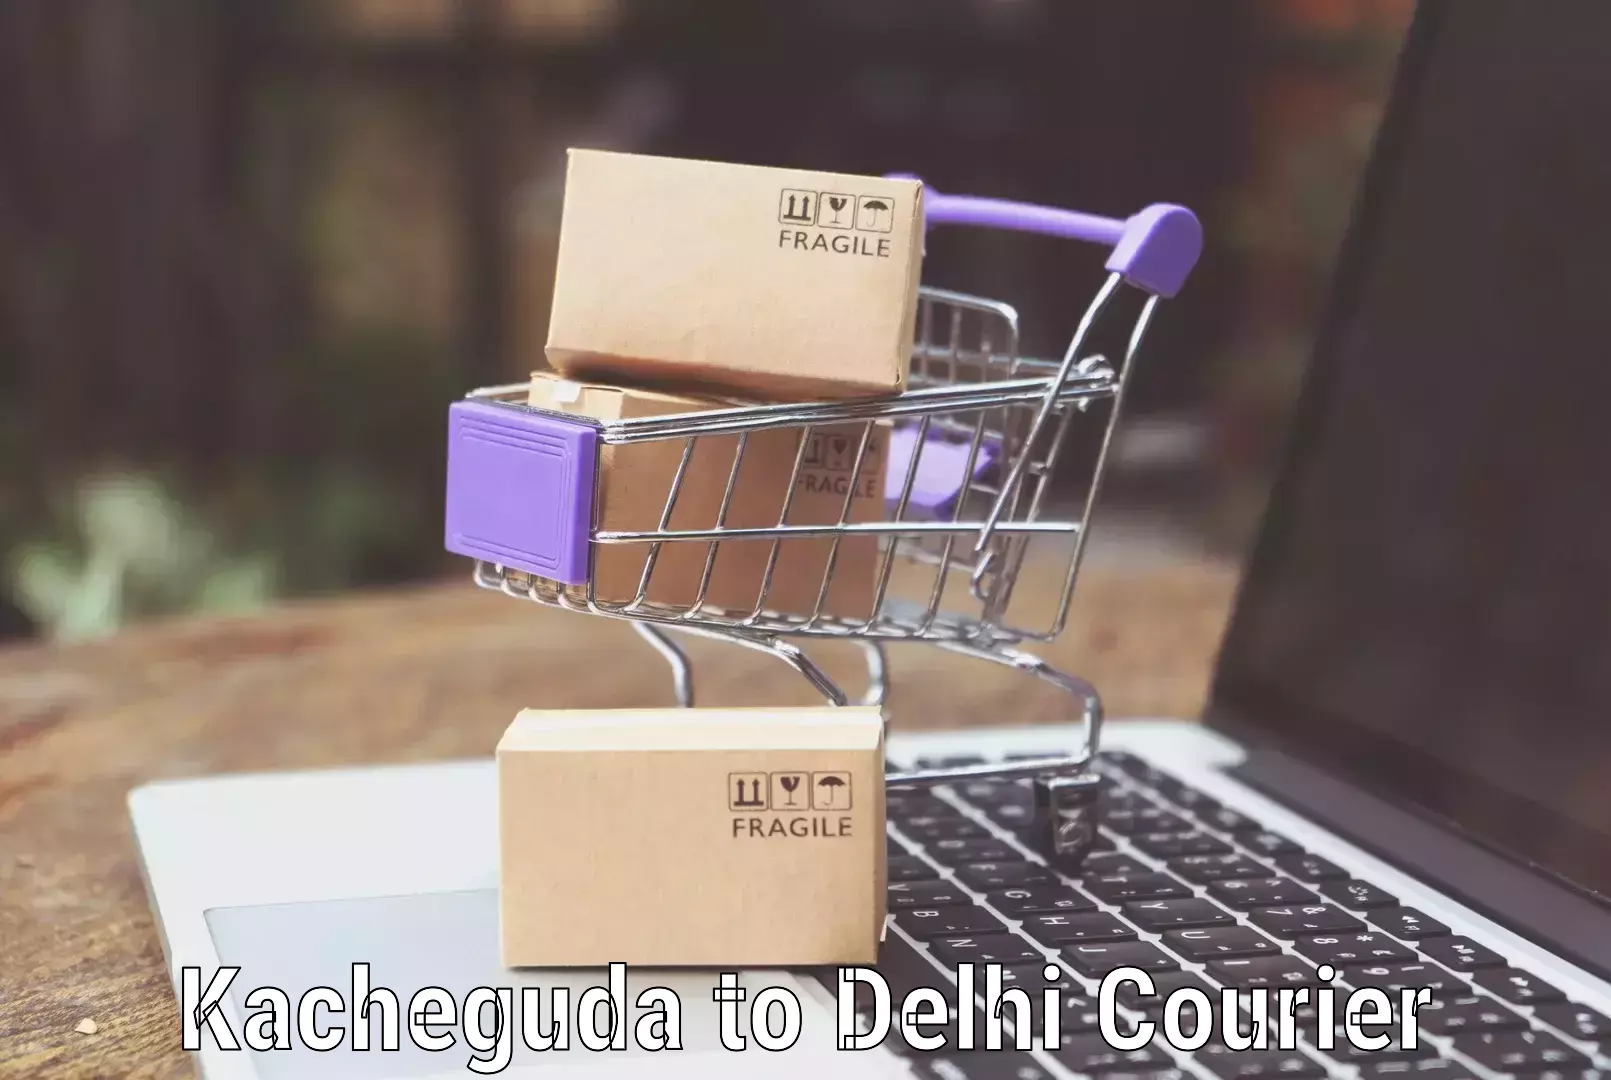 Door-to-door baggage service Kacheguda to NIT Delhi